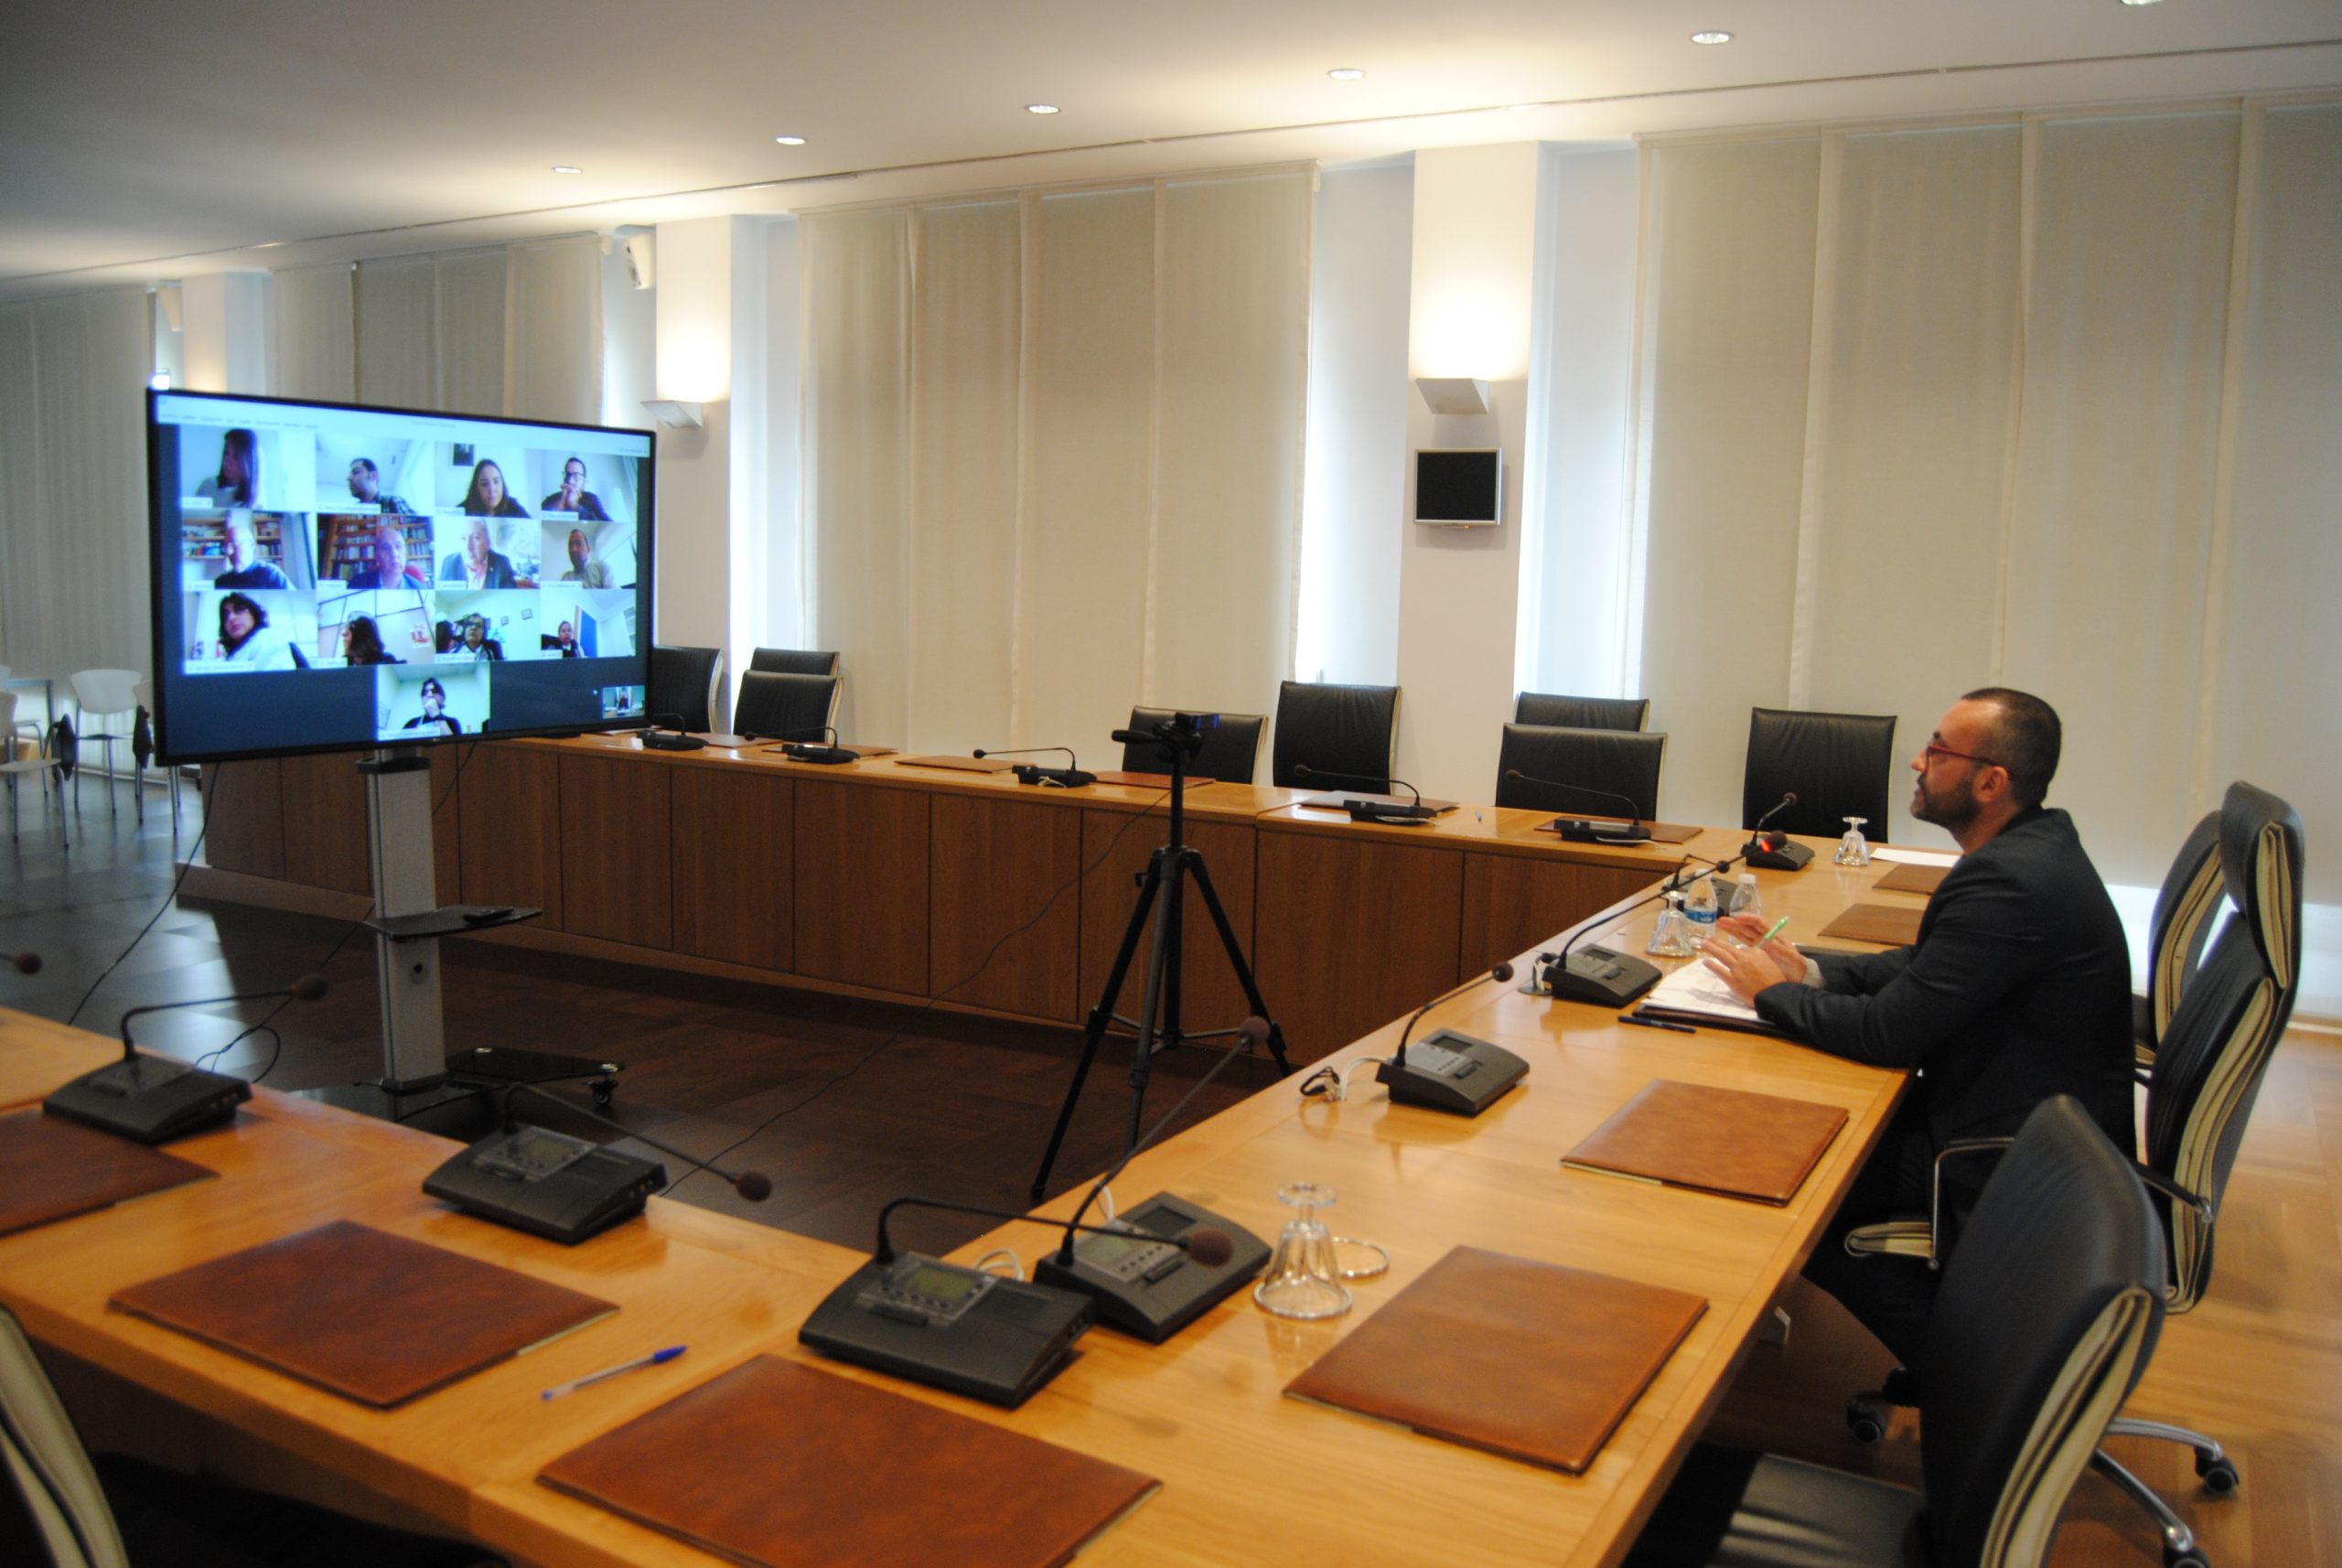 La alianza tecnológica con Telefónica permite al Ayuntamiento de Vila-real disponer de forma gratuita de una plataforma para videoconferencias